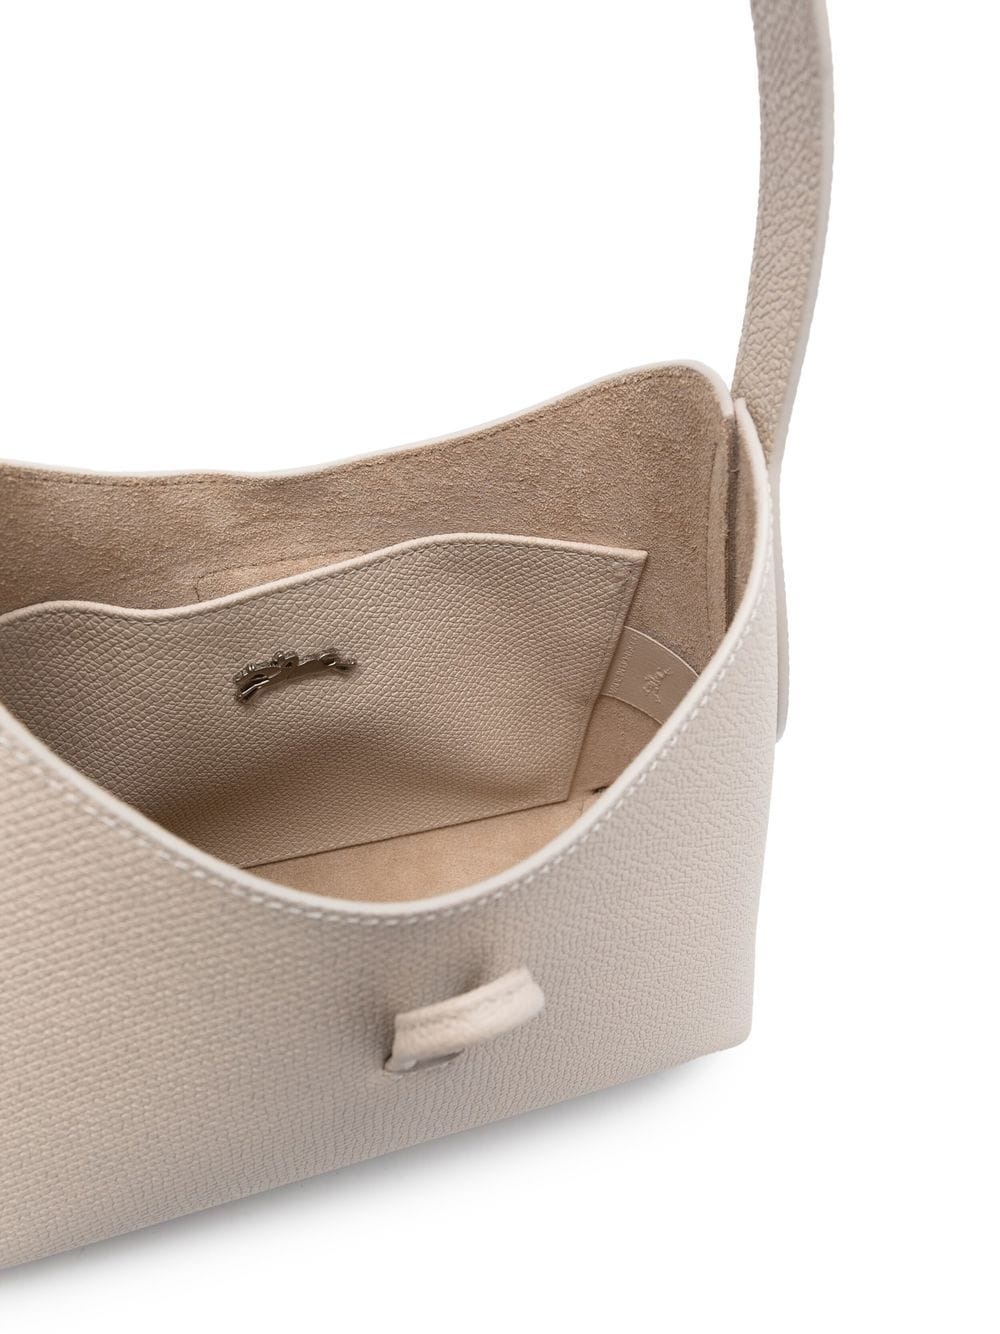 Roseau leather shoulder bag - 5